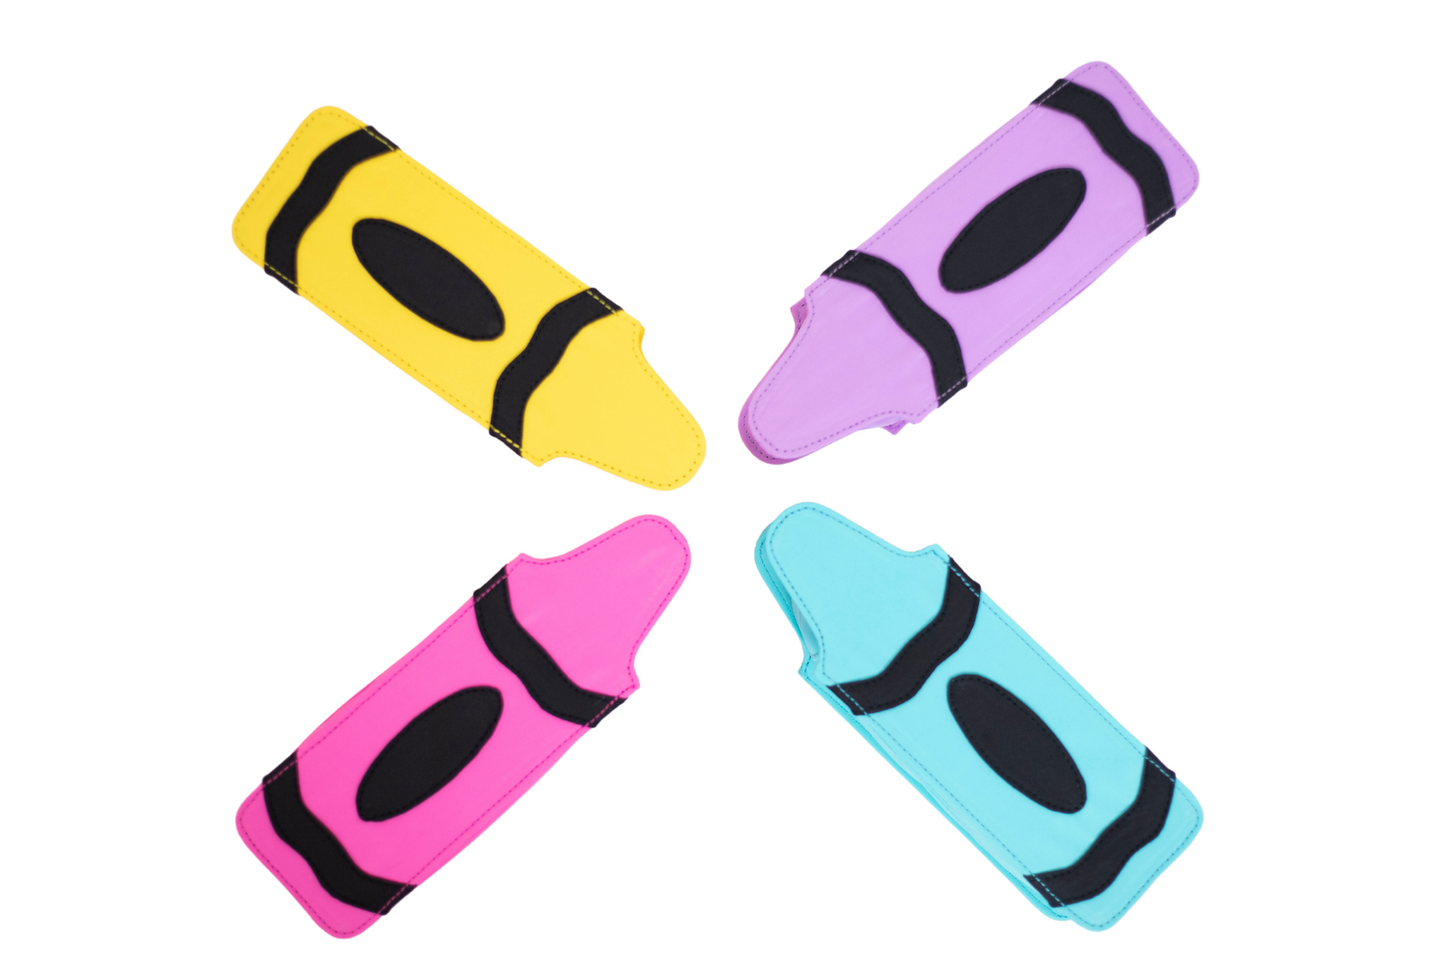 Crayon Pencil Case in 4 colors